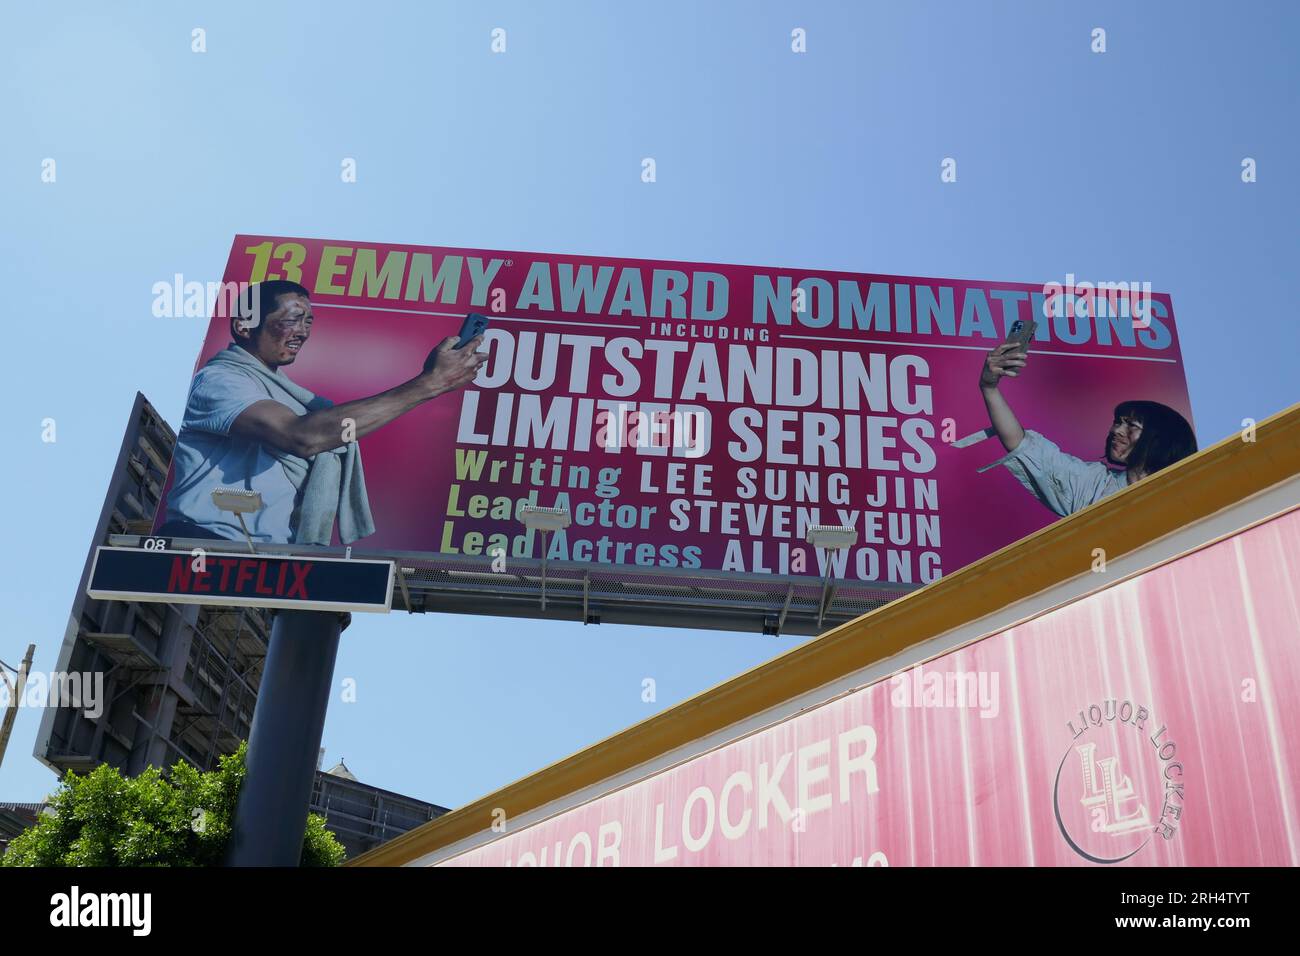 Los Angeles, Kalifornien, USA 12. August 2023 Beef Billboard mit Steven Yeun und Ali Wong mit 13 Emmy Nominierungen am 12. August 2023 in Los Angeles, Kalifornien, USA. Foto: Barry King/Alamy Stock Photo Stockfoto